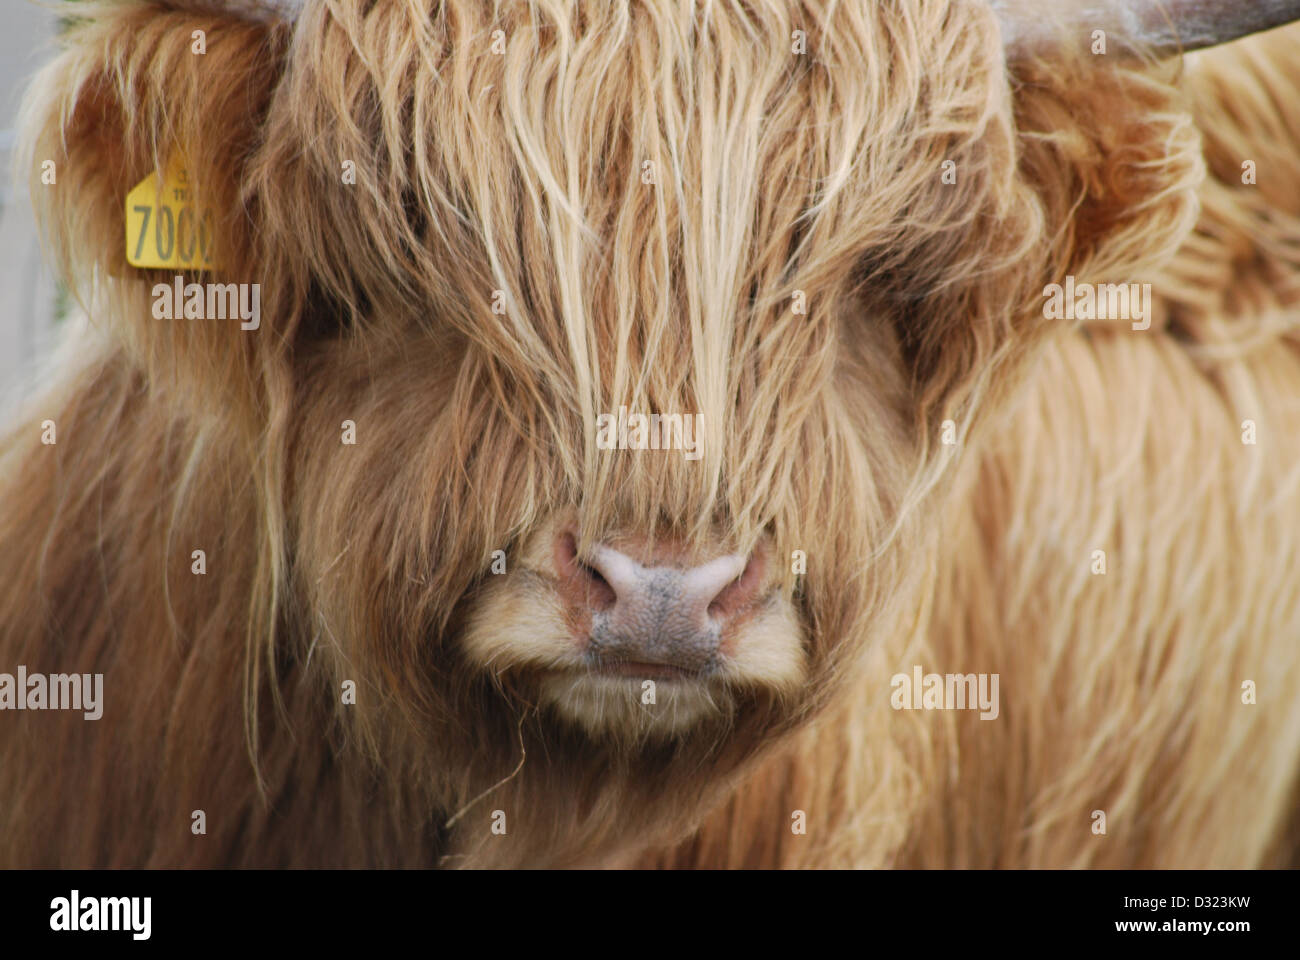 Eine Highland Kuh mit orange und Ingwer Langhaar Fell in einem Streichelzoo oder Bauernhof mit Hörnern Nahaufnahme von ihr Gesicht und tagged Ohr Stockfoto